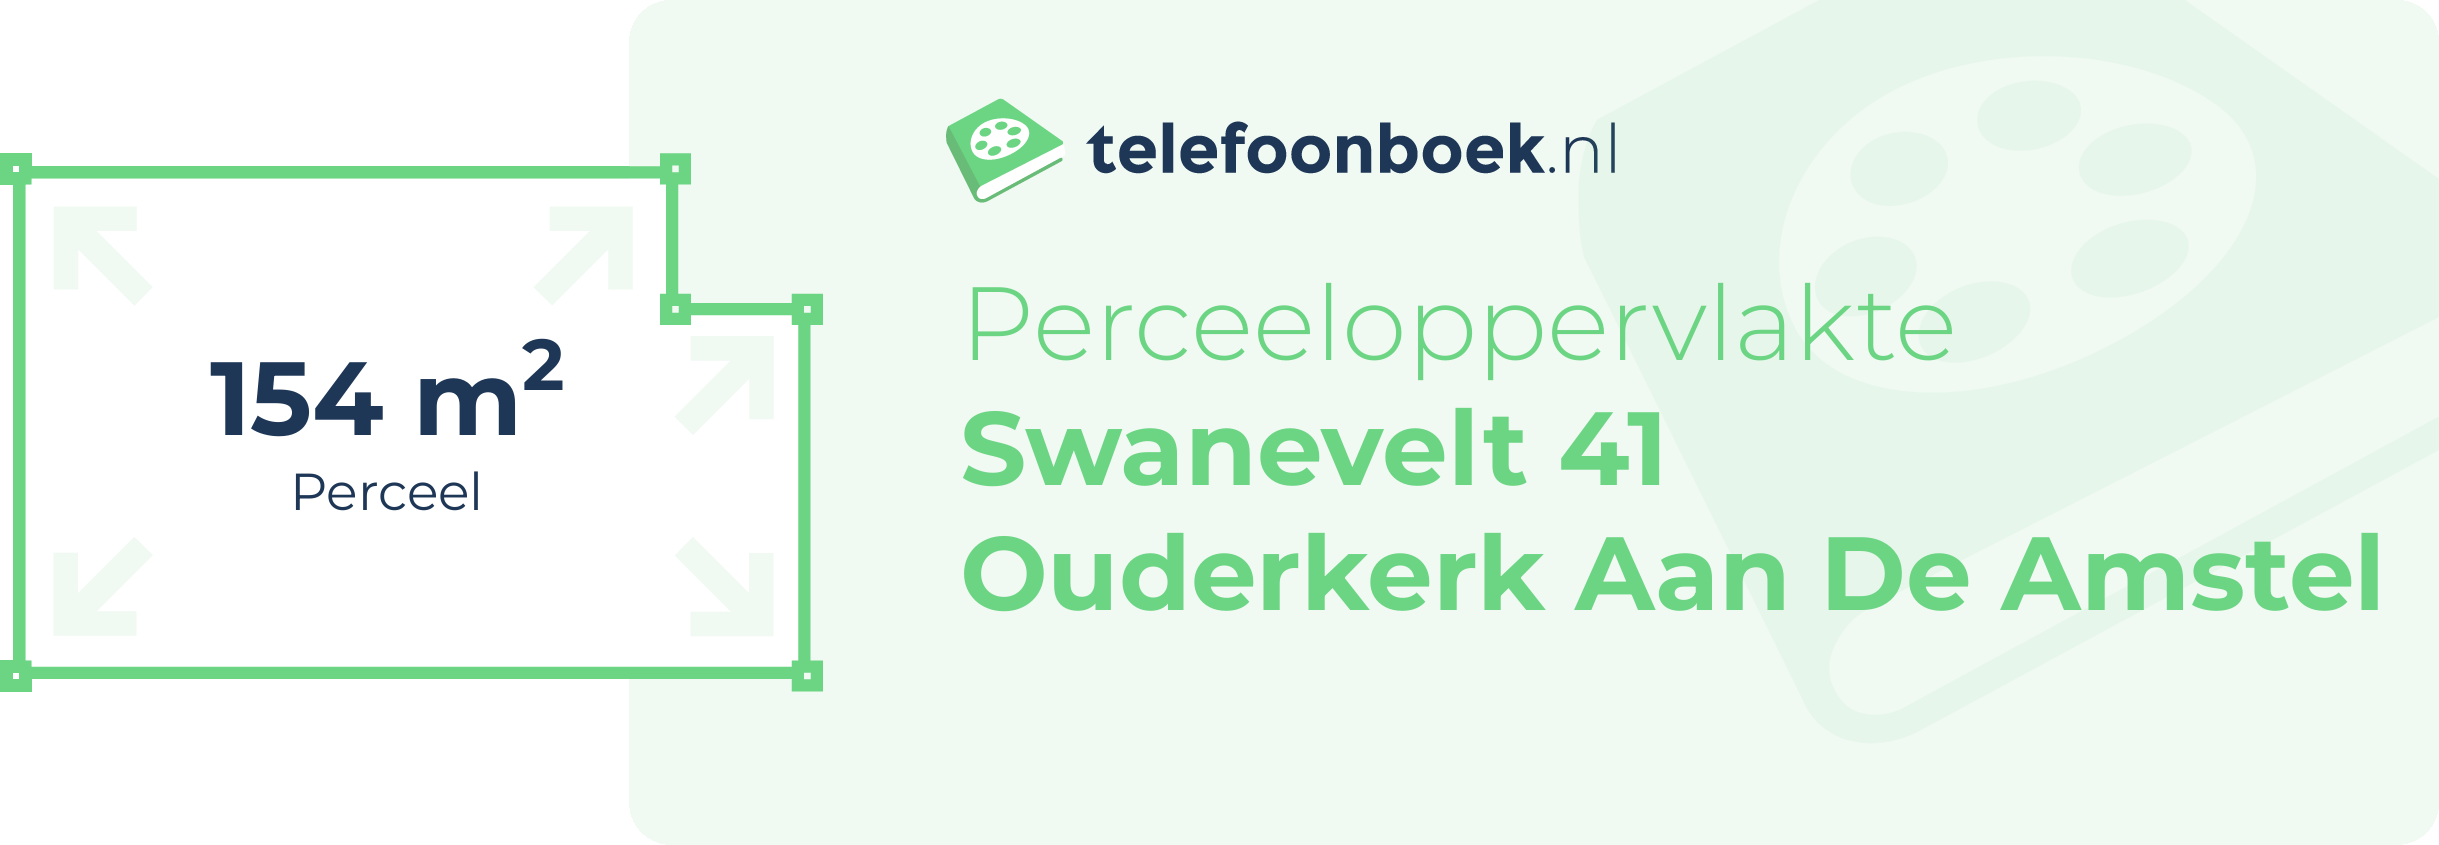 Perceeloppervlakte Swanevelt 41 Ouderkerk Aan De Amstel